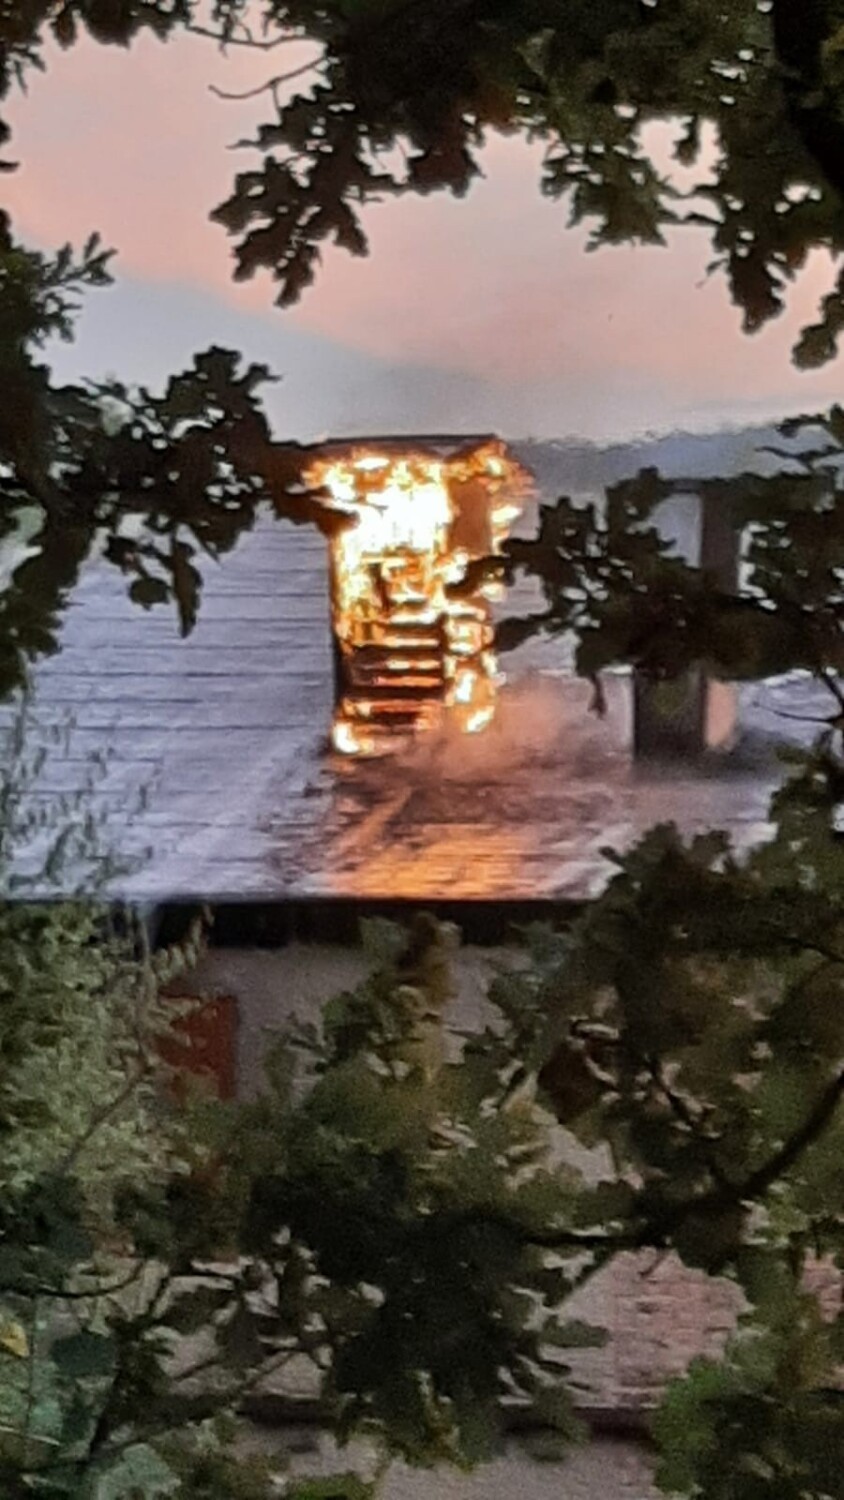 Pali się nieczynna cegielnia w Konradowie koło Głuchołaz. Obok jest hałda odpadów. Pożar gasi 9 jednostek straży